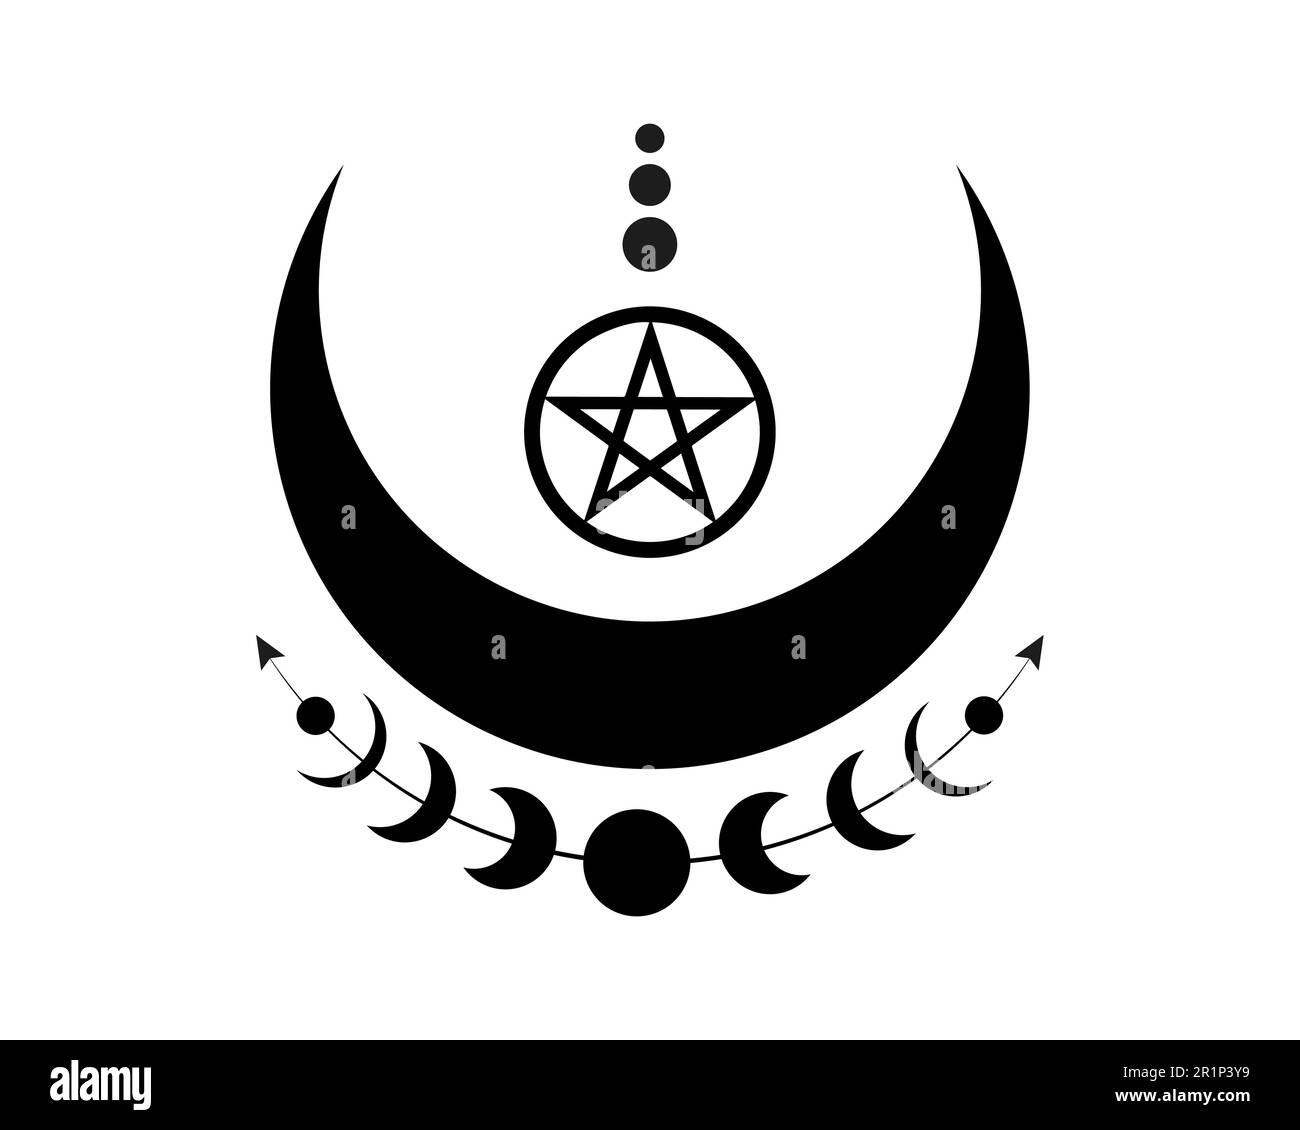 Mystische Mondphasen und Wicca-Pentagramm. Heilige Geometrie. Logo, Halbmond-Mond, heidnische Wiccan-Göttin-Symbol, Energiekreis, Bo-Style-Vektor Stock Vektor